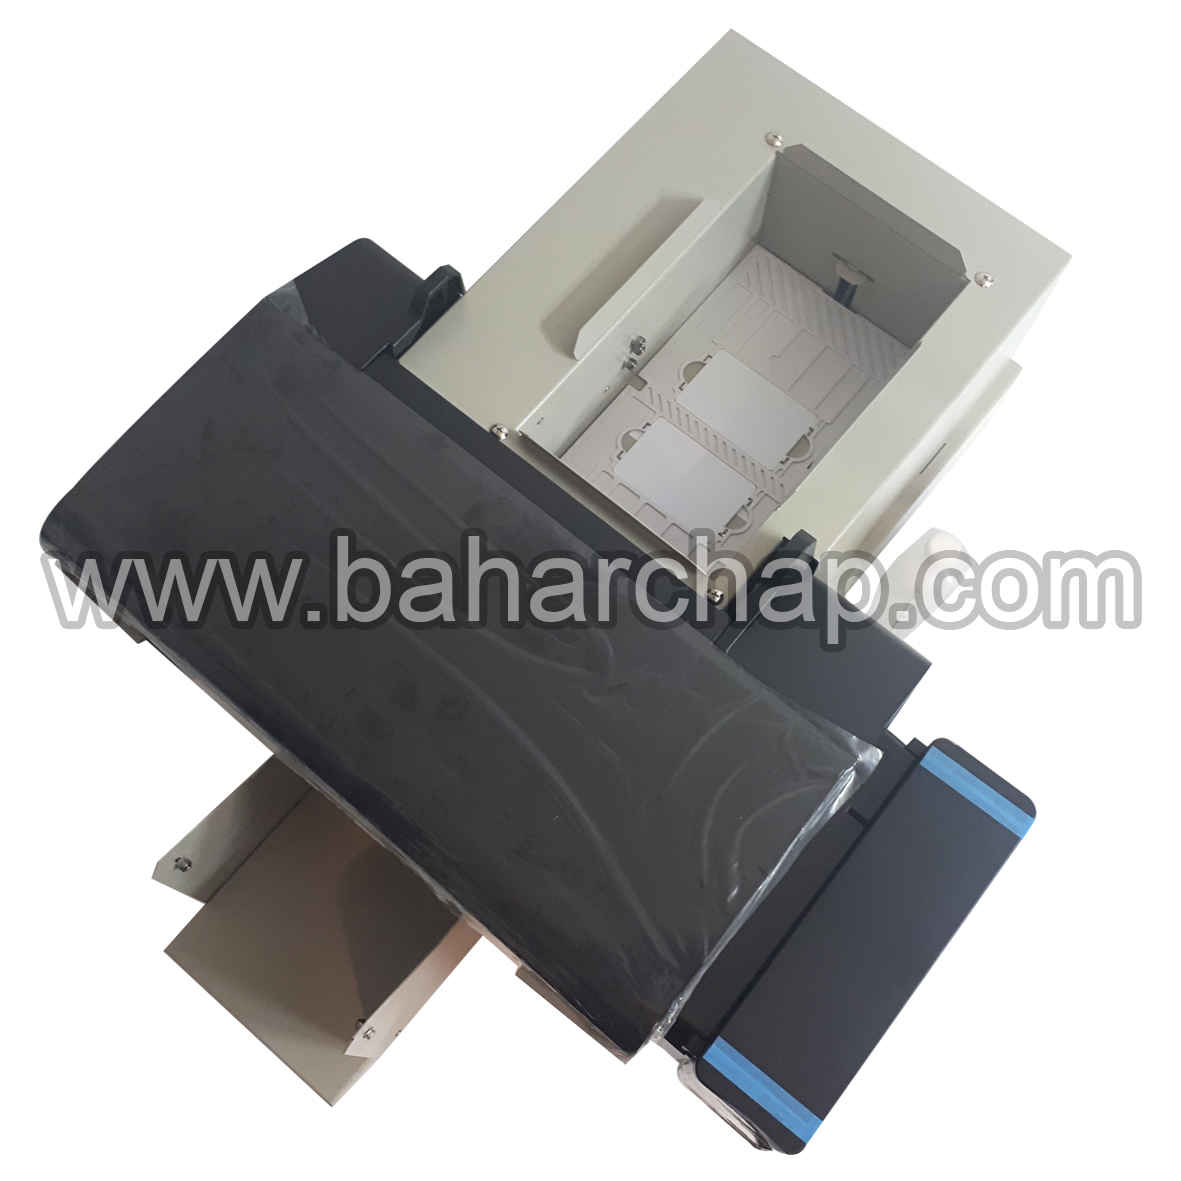 فروشگاه و خدمات اینترنتی بهارچاپ اصفهان-پرینترچاپ کارتPVC اپسون L800تمام اتوماتیک-Automatic printer PVC ID card Epson L800